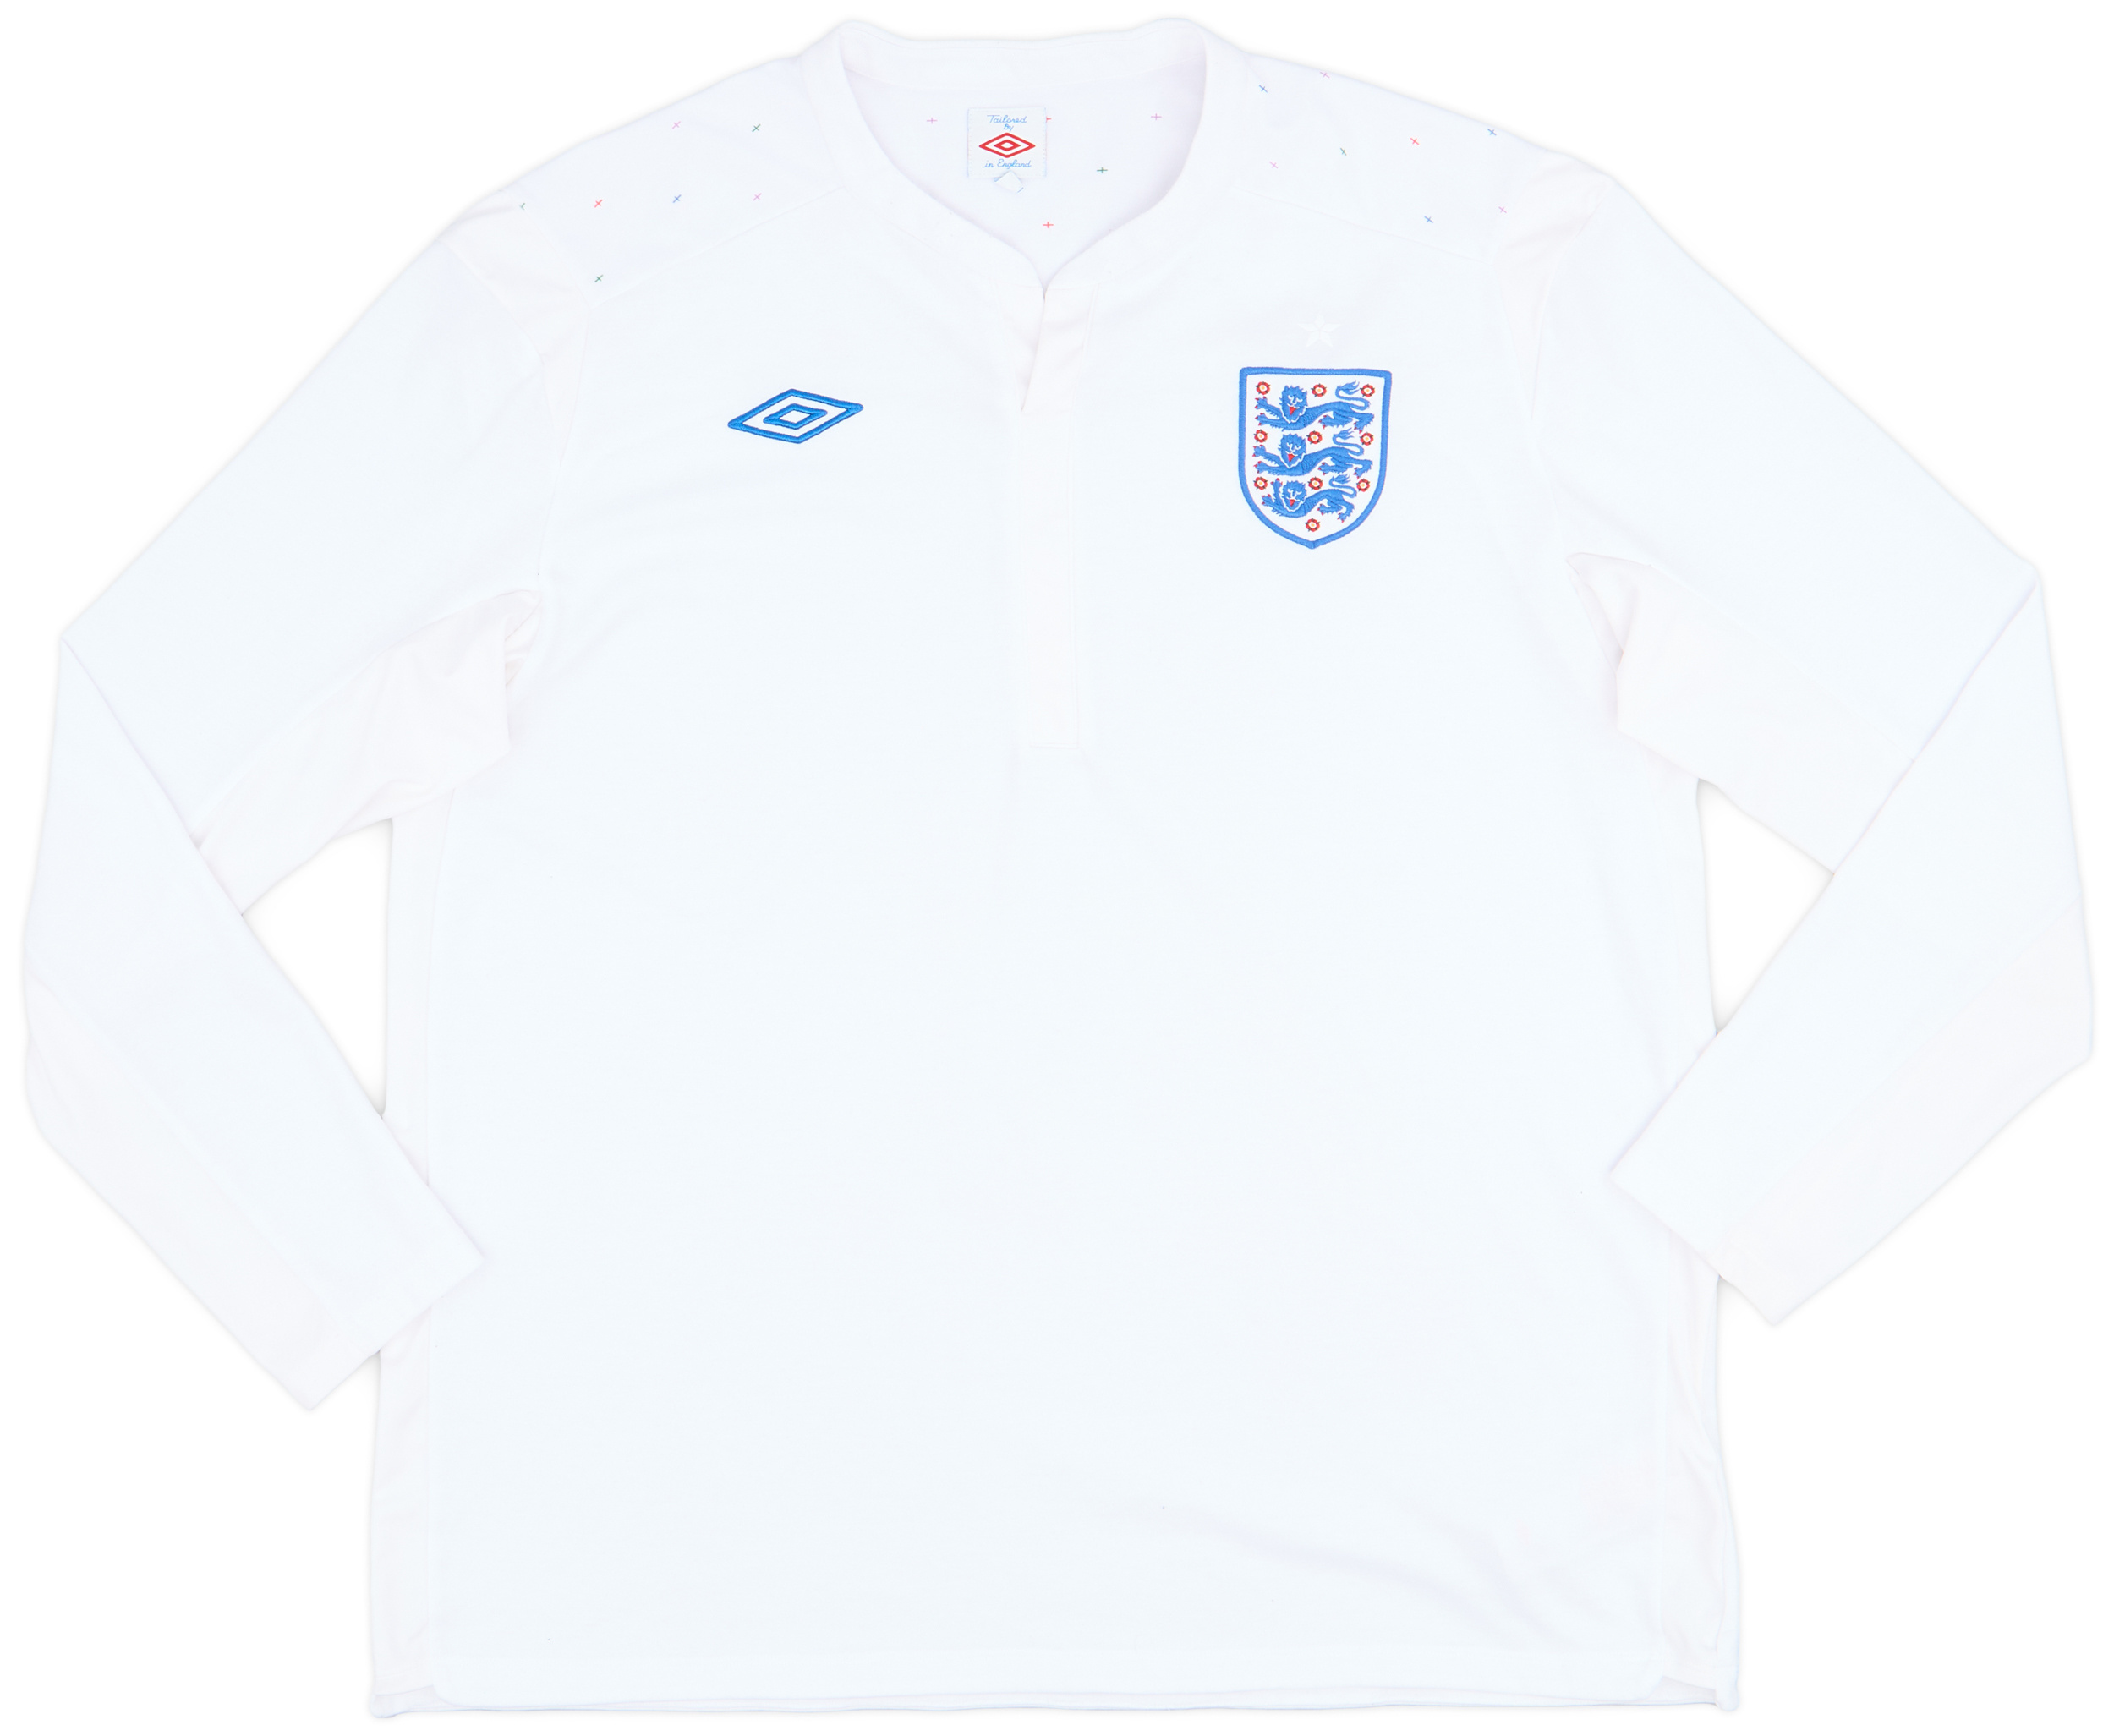 Retro England Shirt